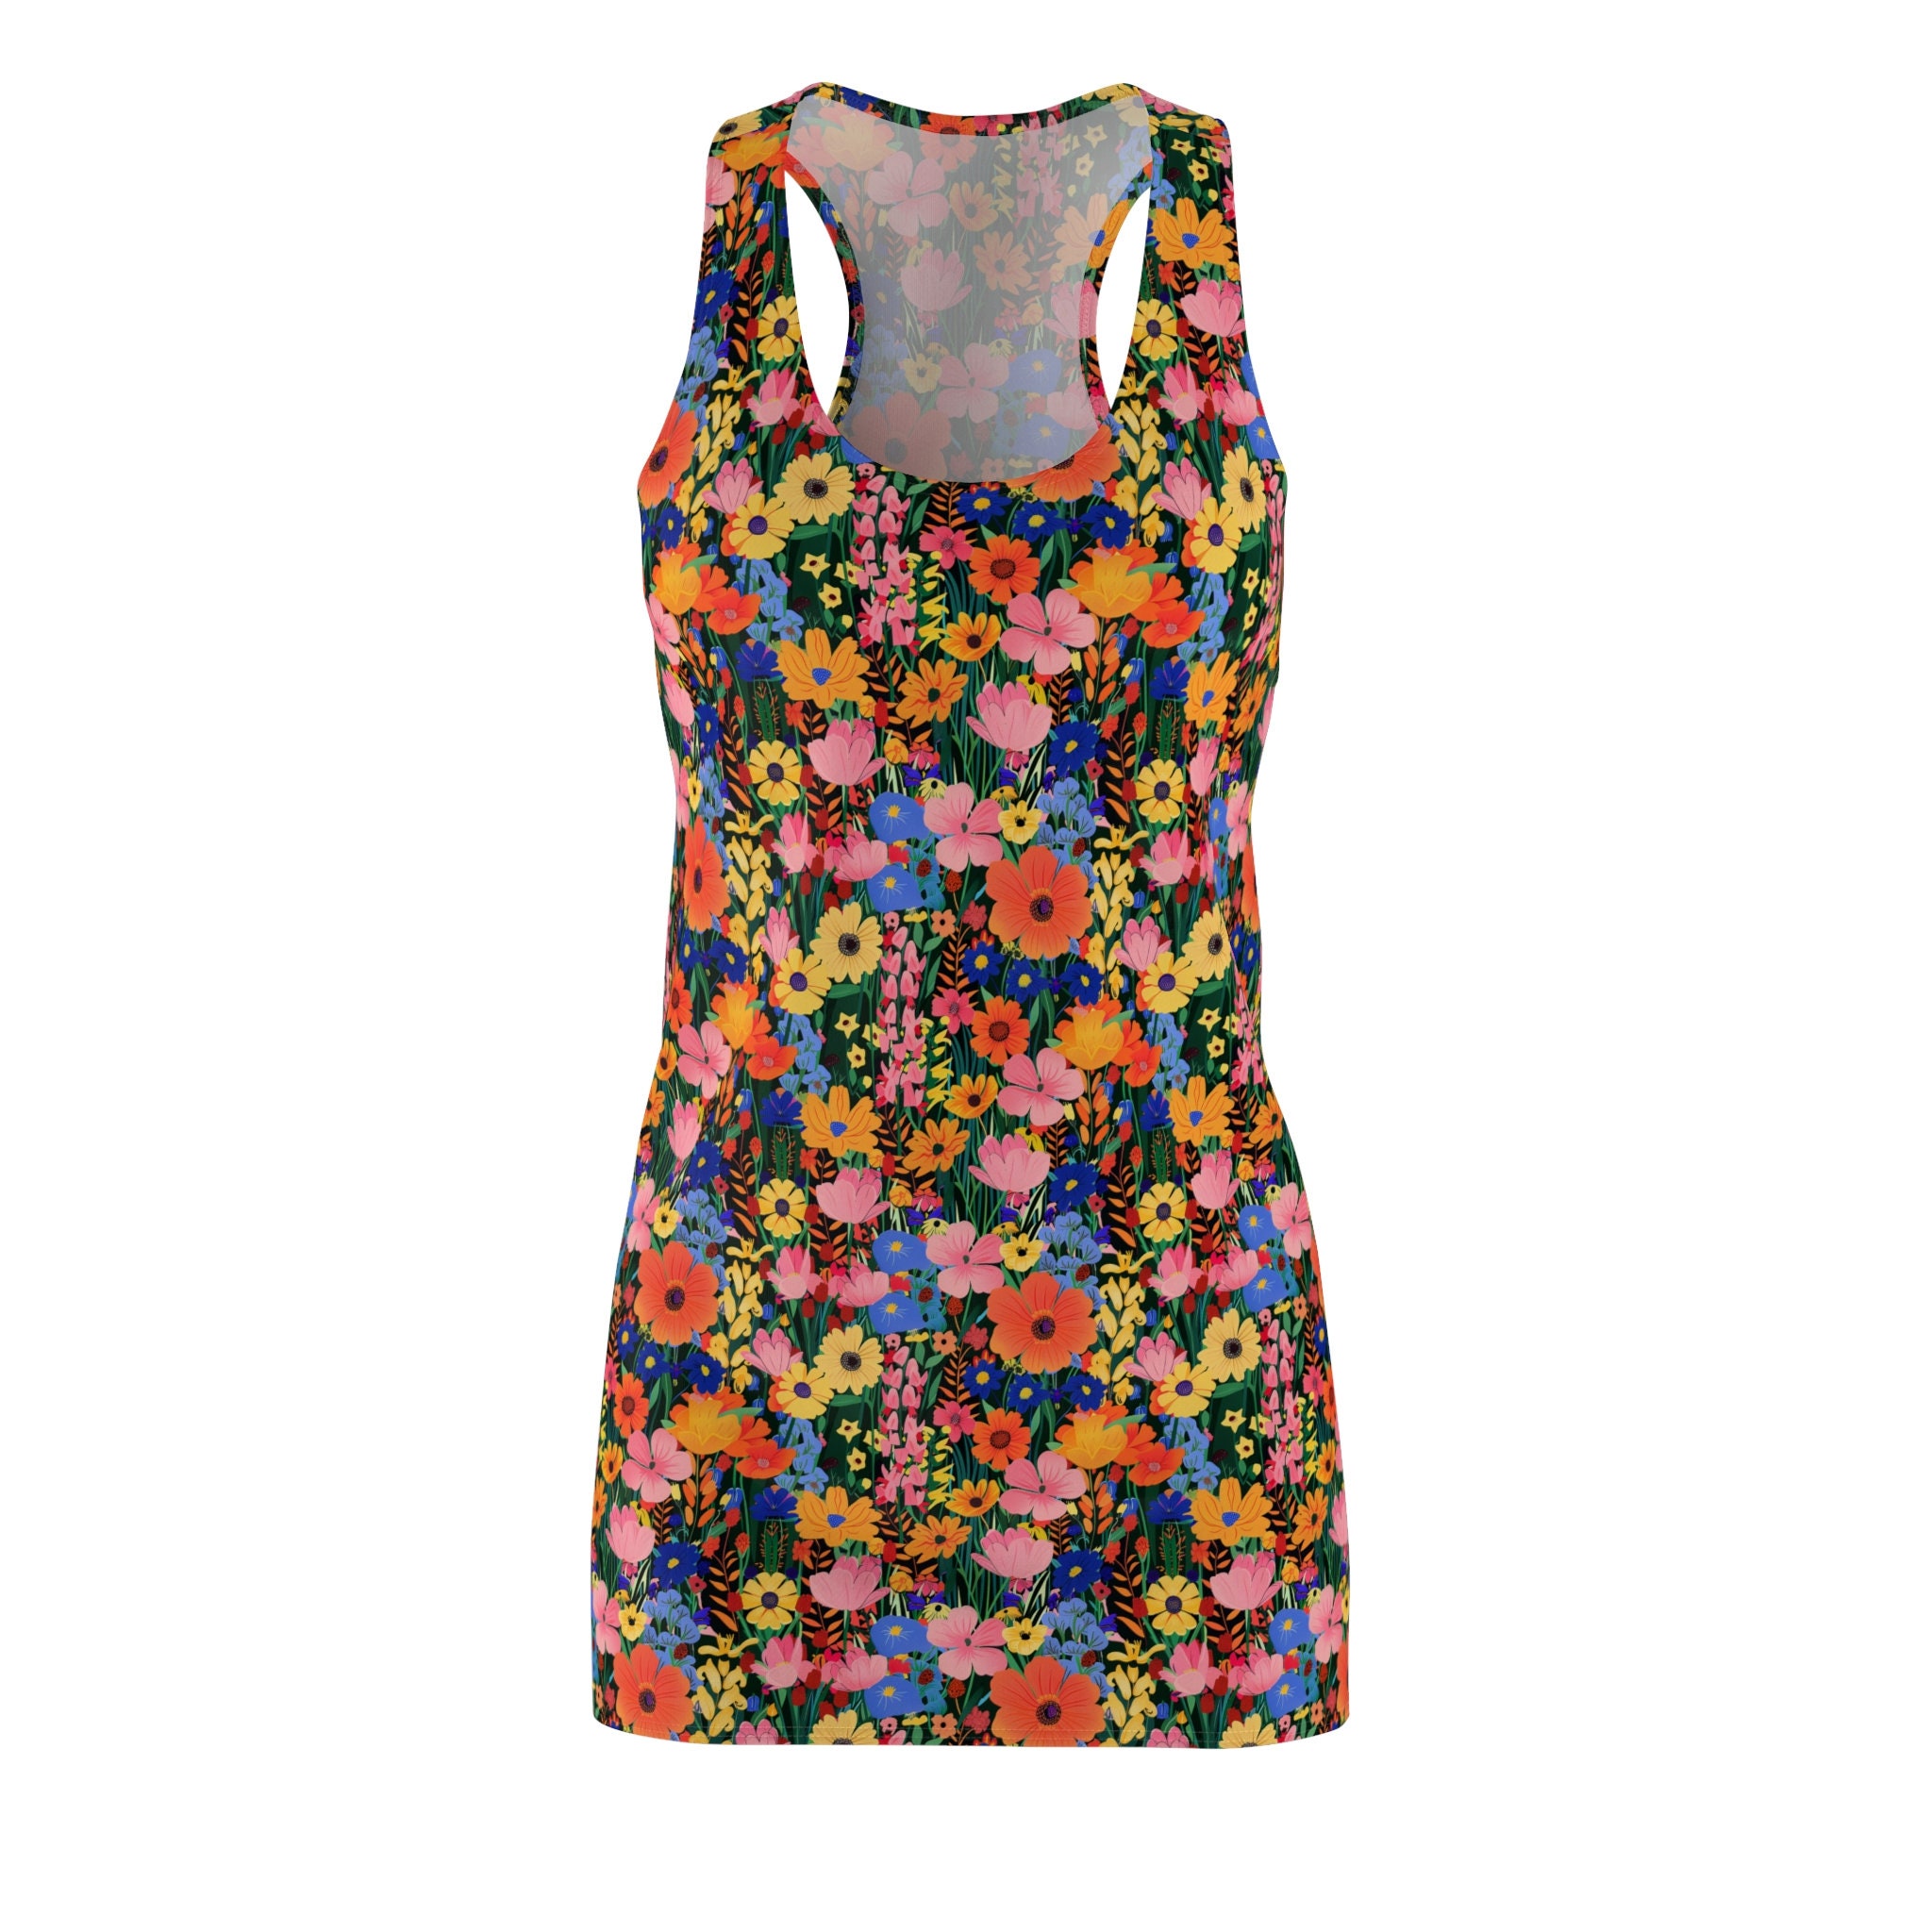 Flower Women's Cut & Sew Racerback Dress